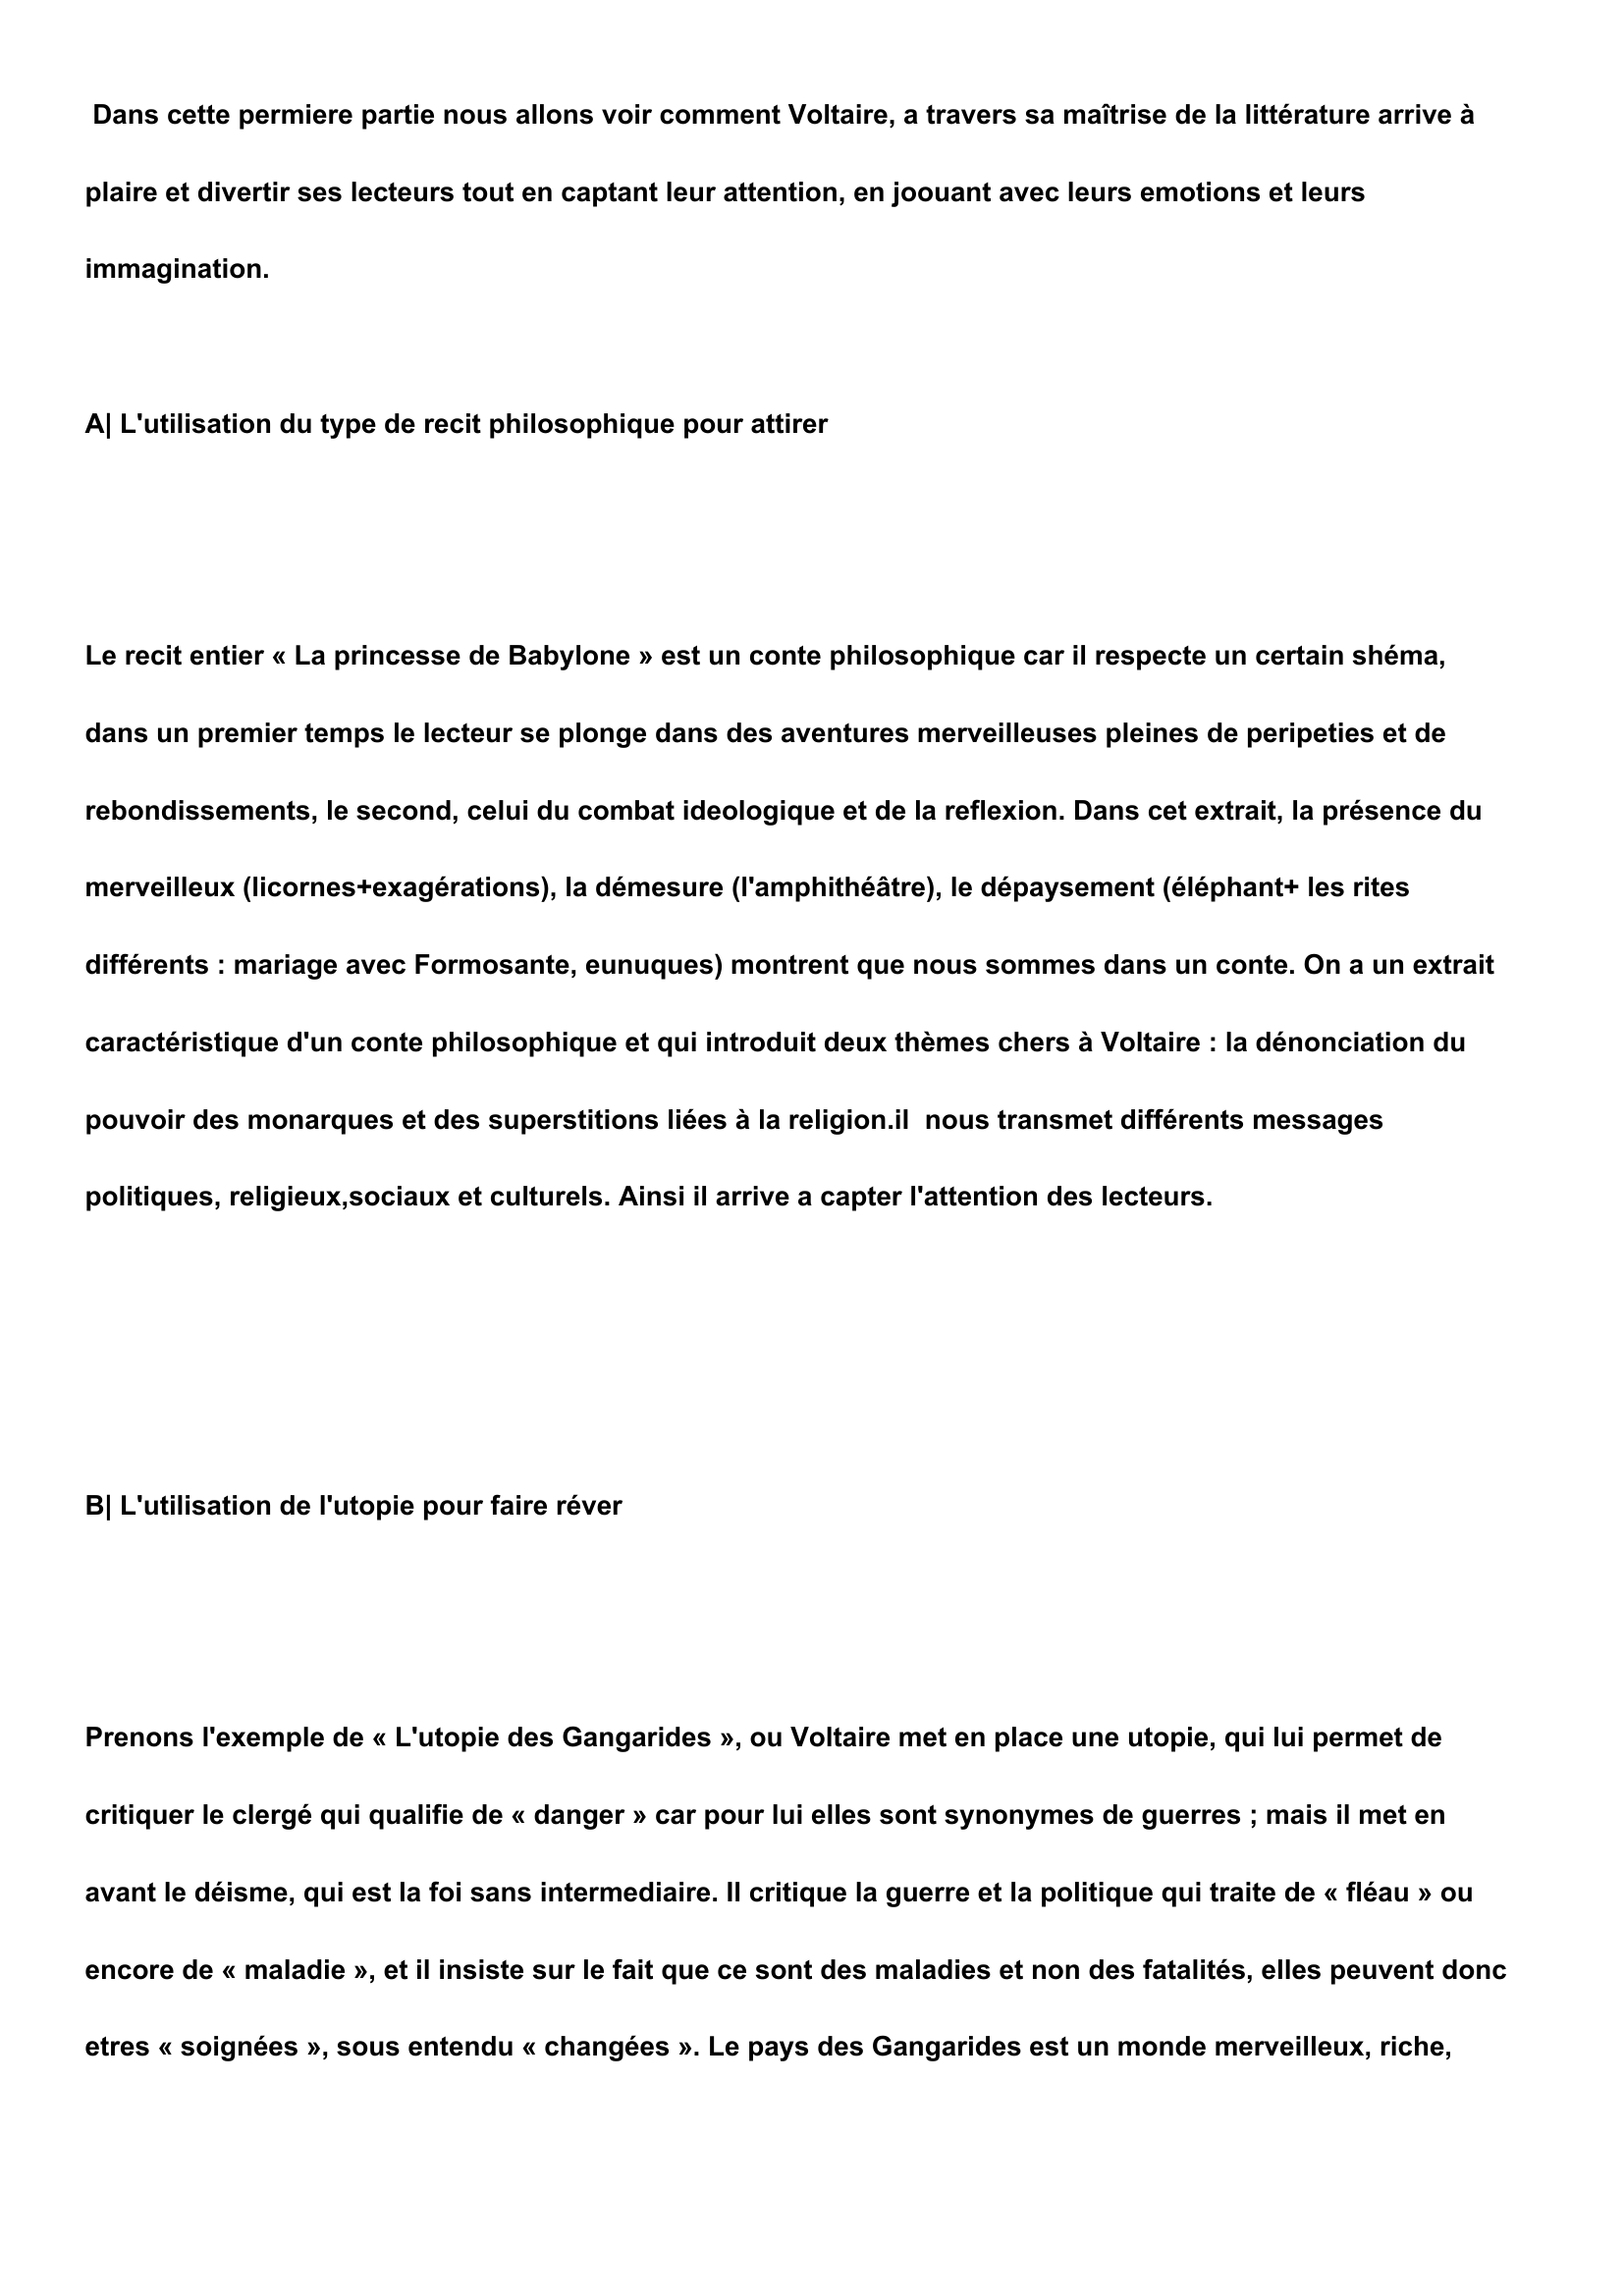 Prévisualisation du document dissertation "la princesse de babylone" de Voltaire